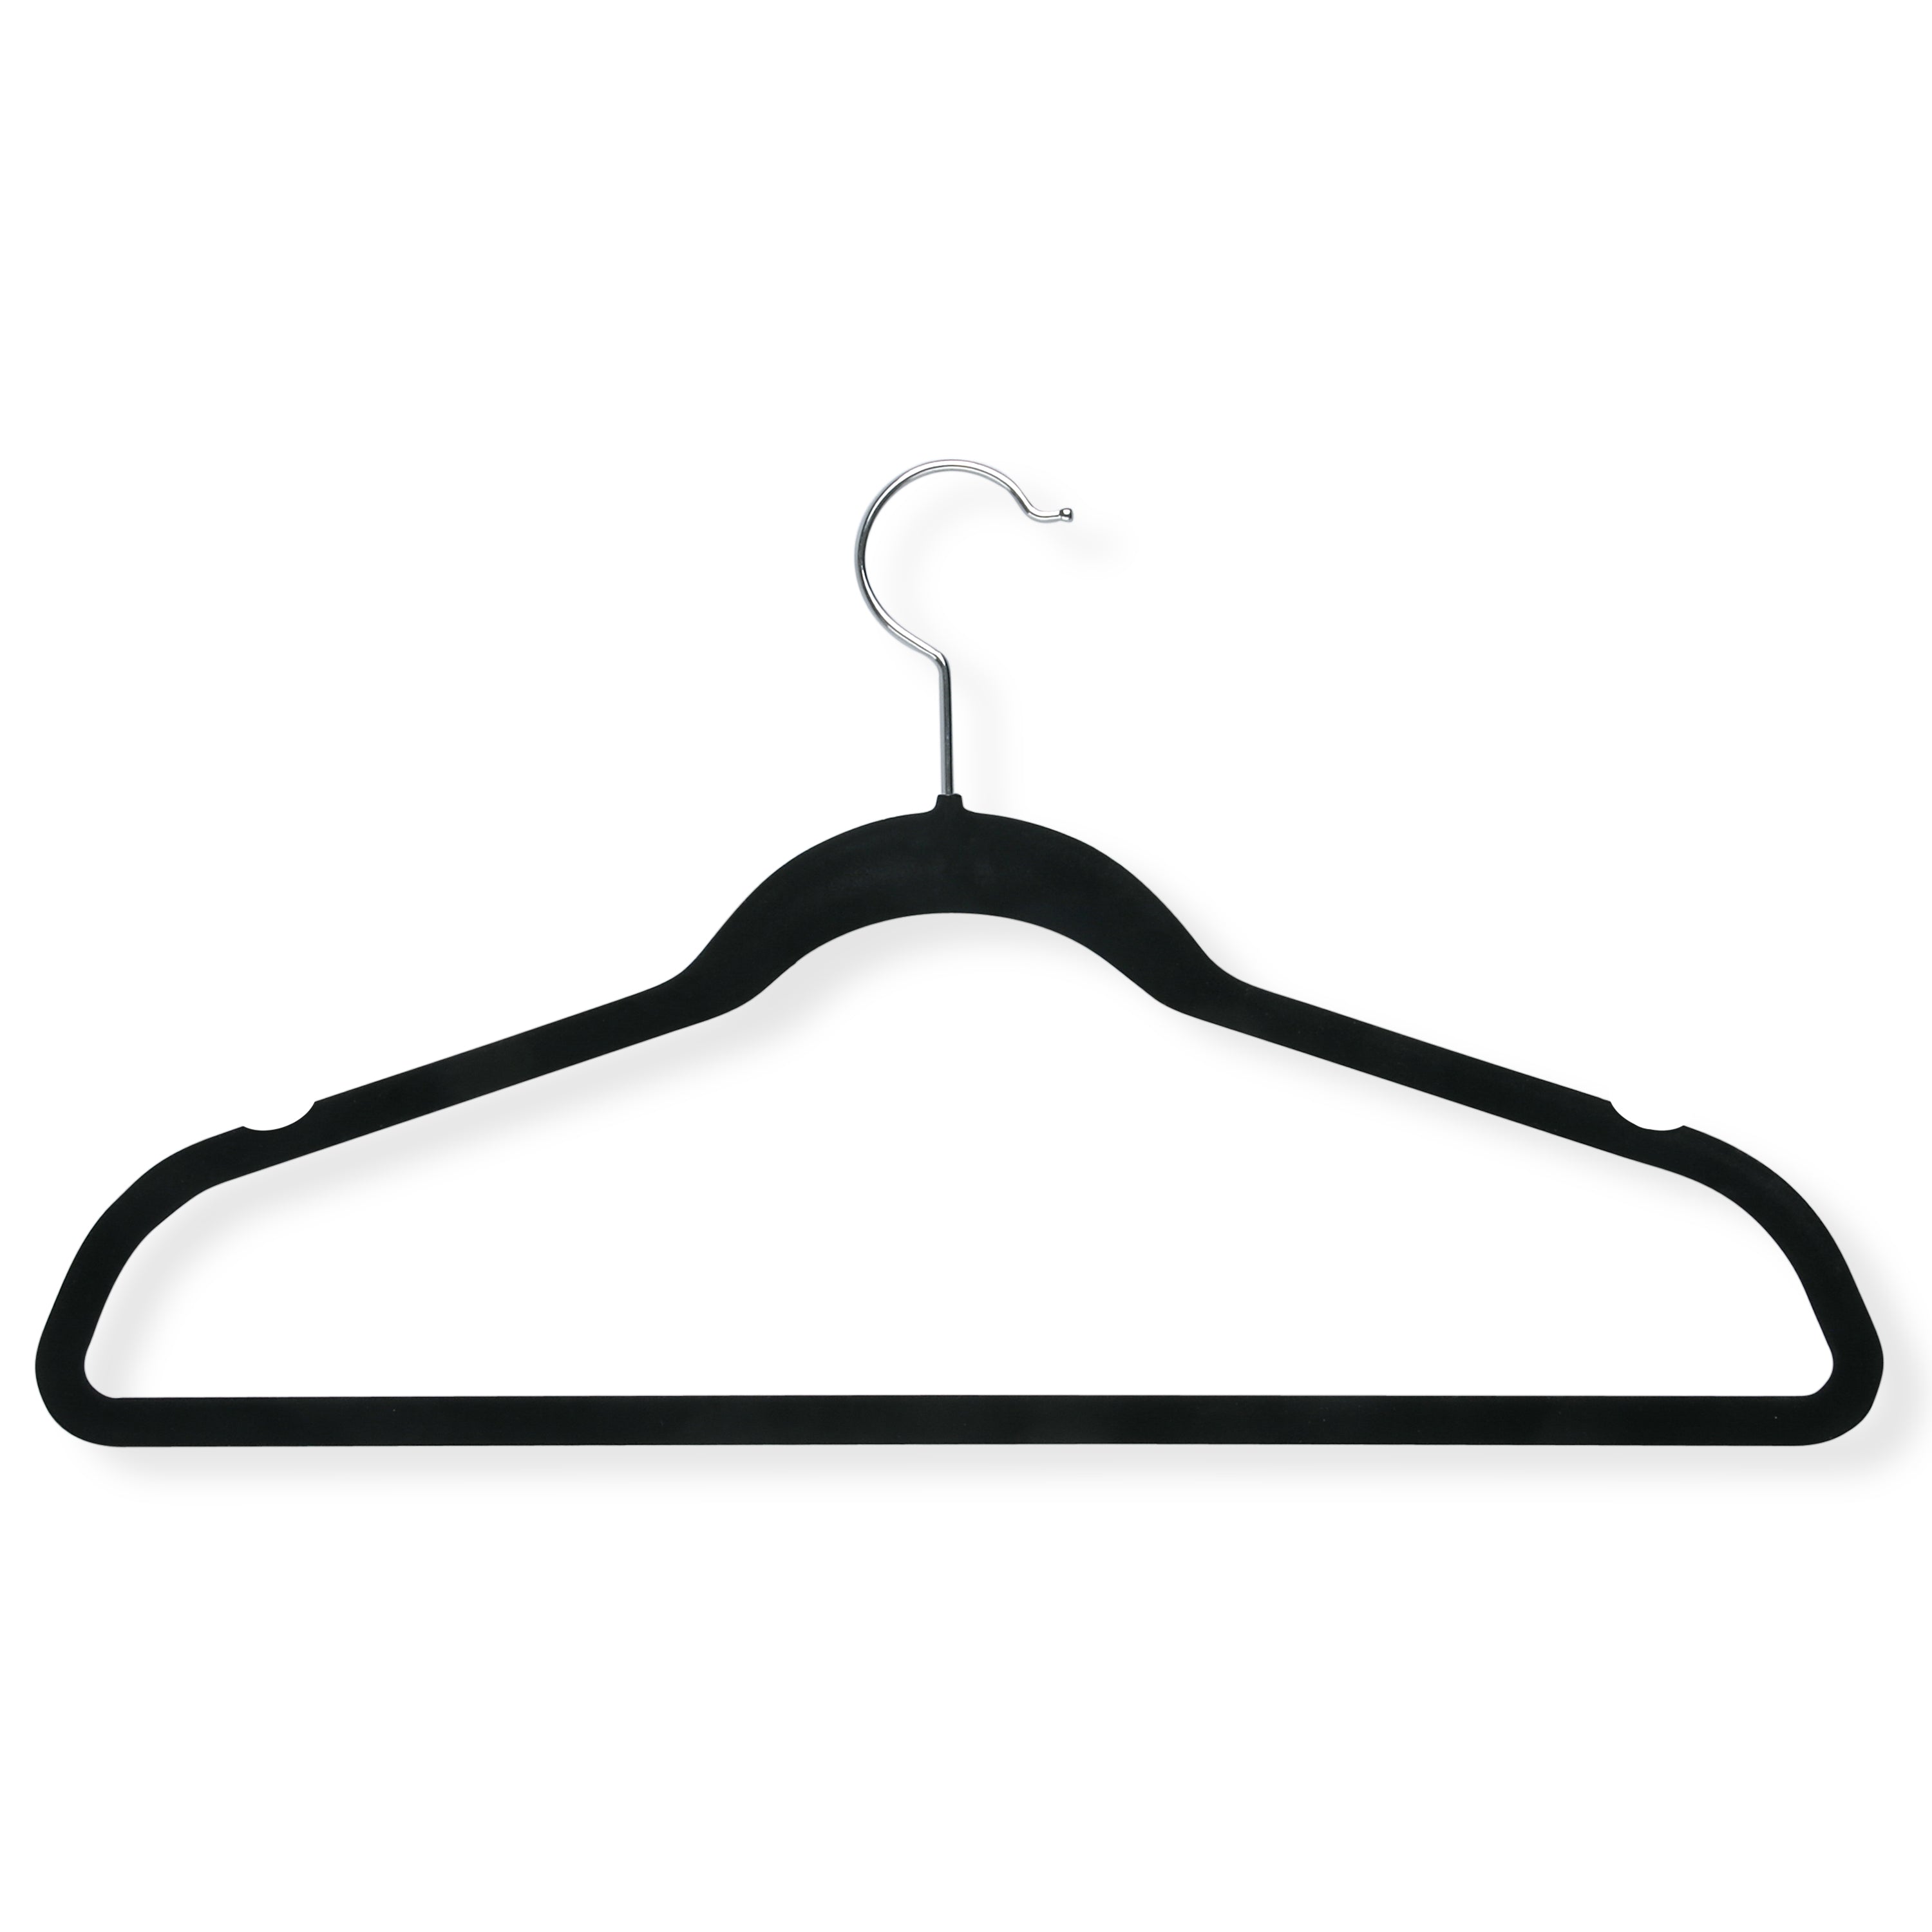 Men's Wooden Jacket Hangers | KirbyAllison.com